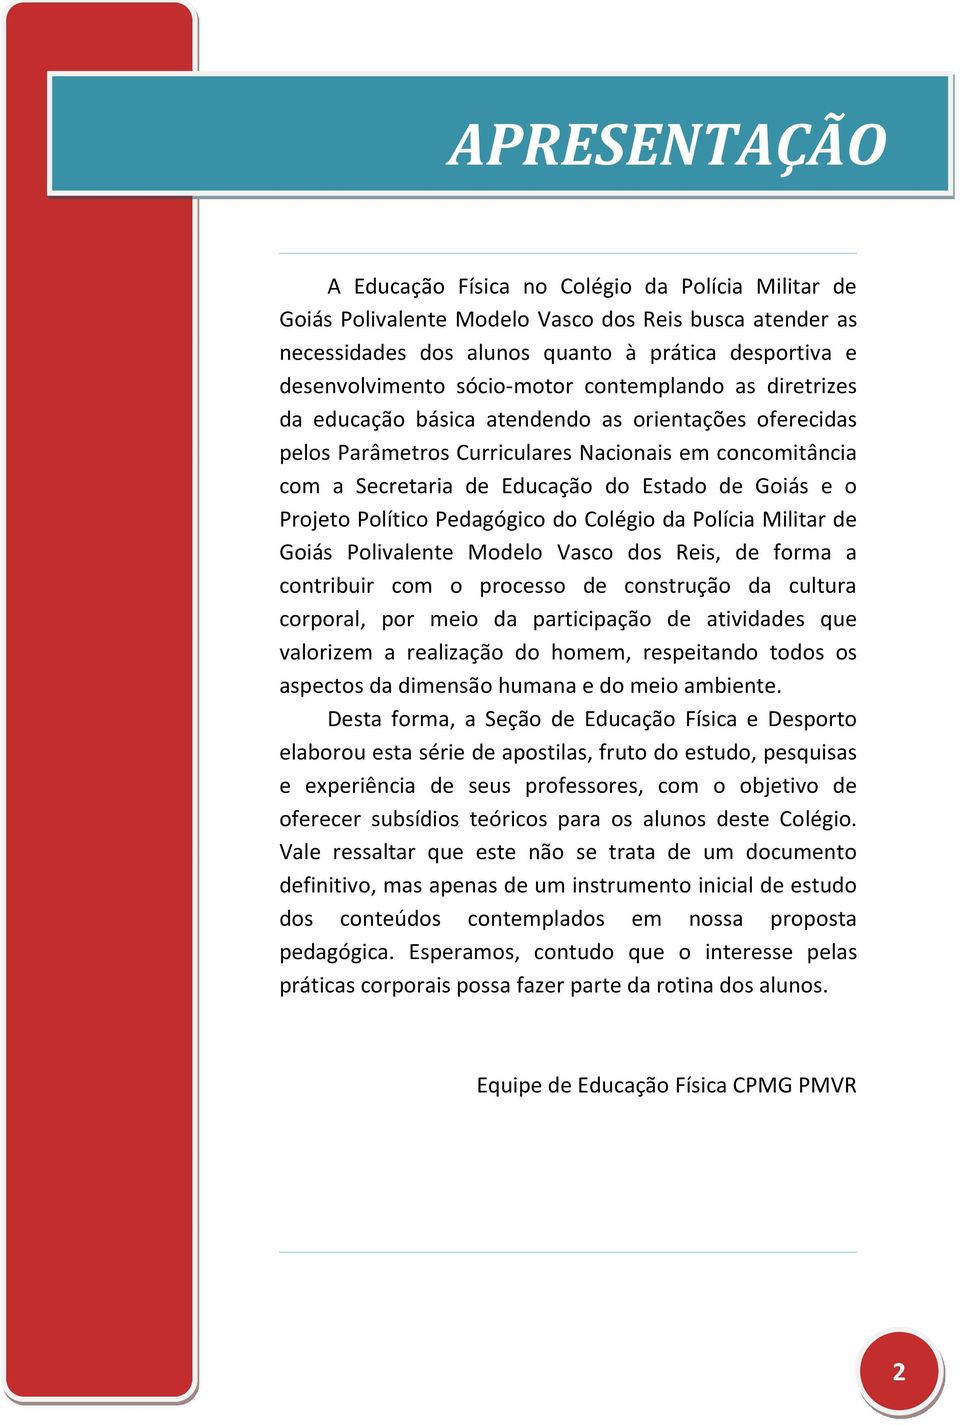 e o Projeto Político Pedagógico do Colégio da Polícia Militar de Goiás Polivalente Modelo Vasco dos Reis, de forma a contribuir com o processo de construção da cultura corporal, por meio da